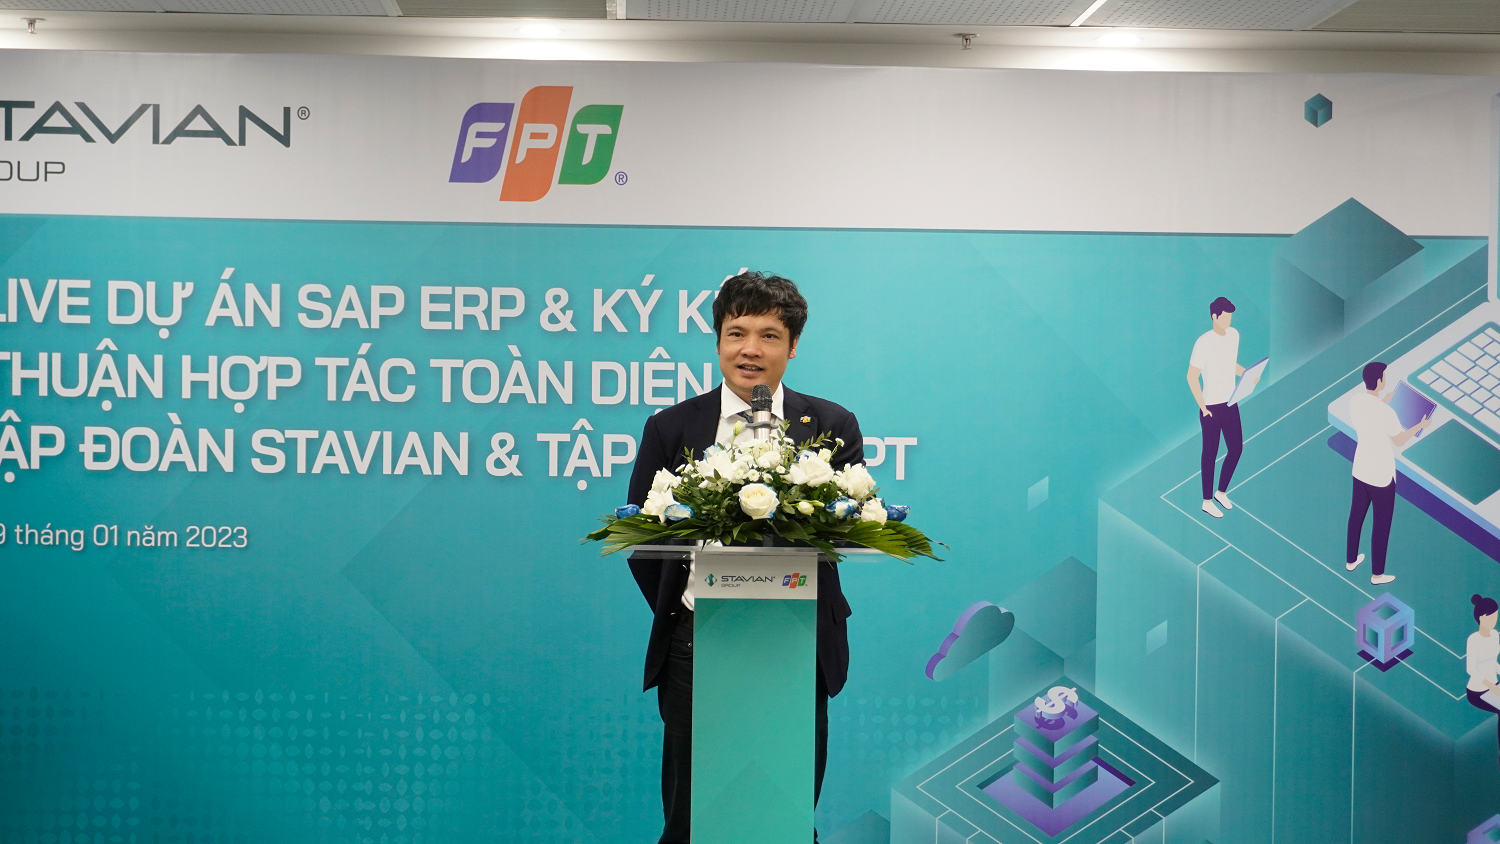 3. Ông Nguyễn Văn Khoa - Tổng Giám đốc Tập đoàn FPT tin tưởng sự hợp tác giữa hai công ty sẽ thúc đẩy quá trình số hóa cho Stavian.